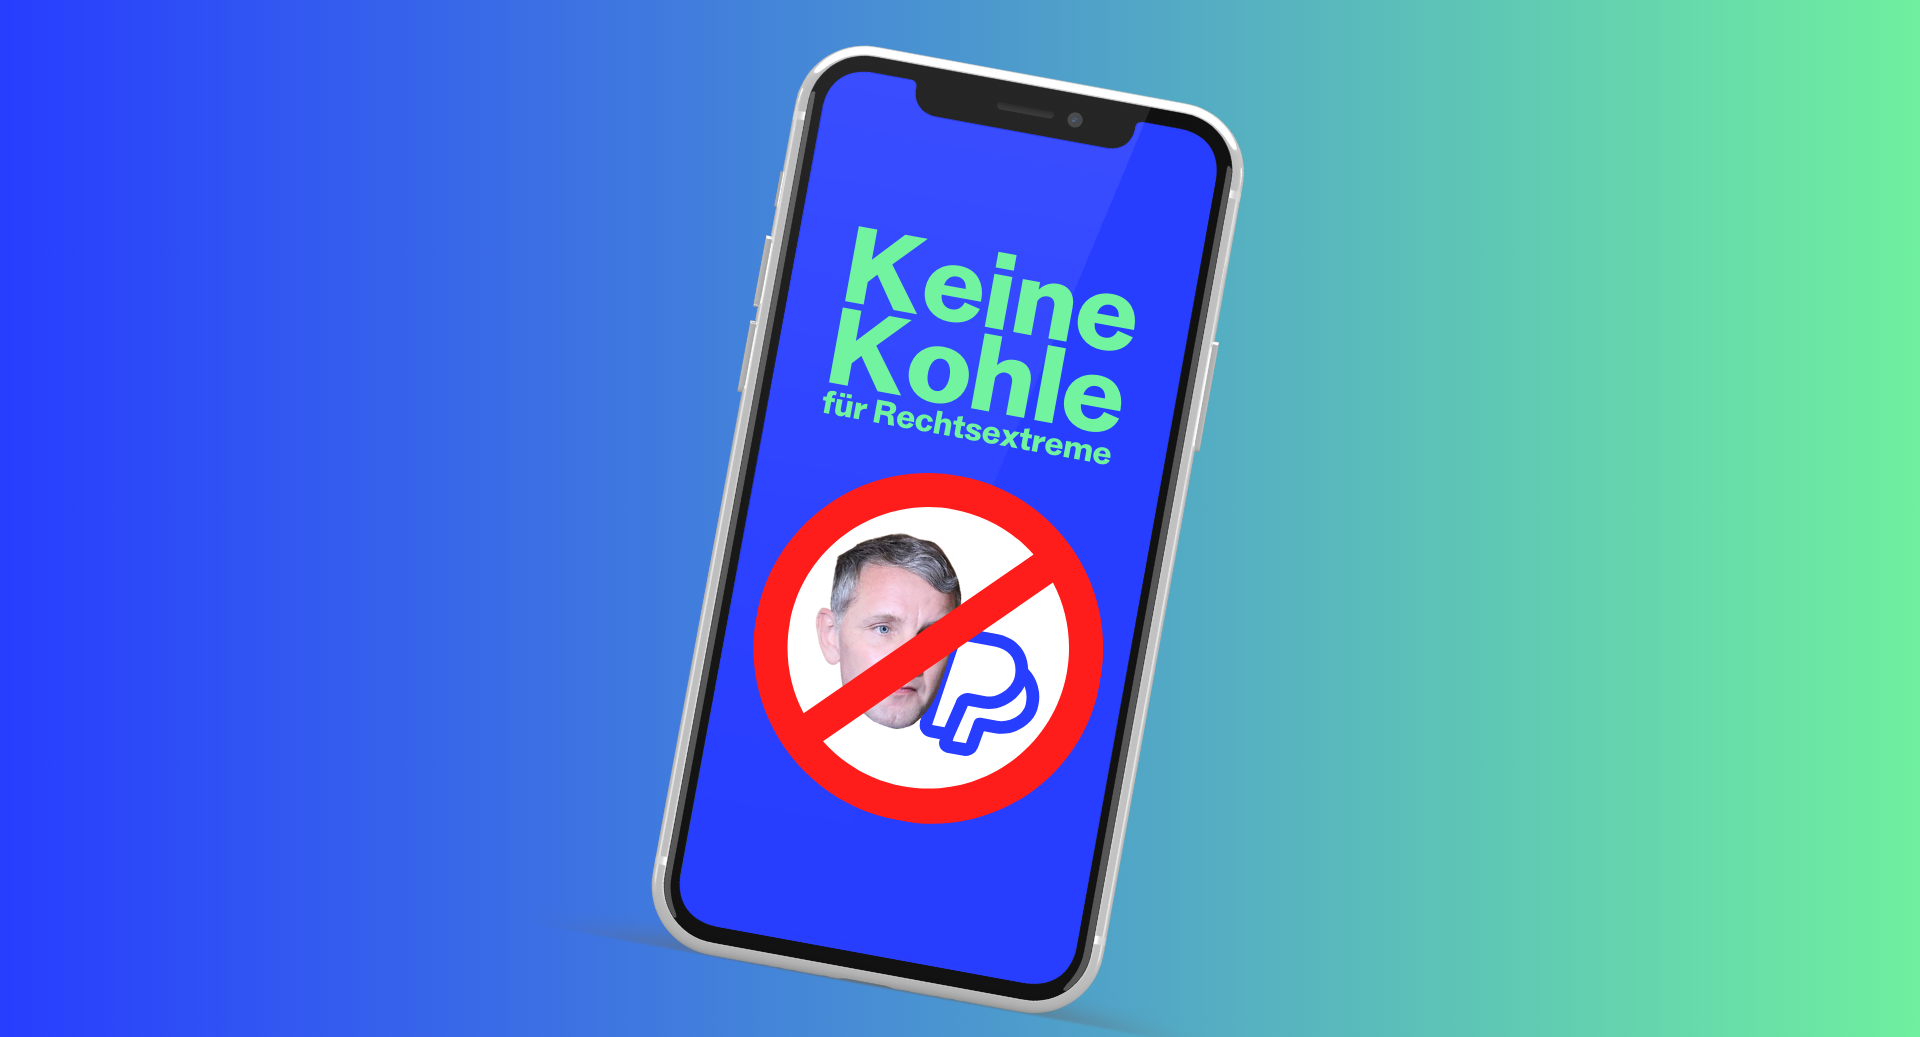 Es ist ein Handy abgebildet, auf dem das Kampagnen Logo zu sehen ist. Dieses besteht aus einem durchgestrichenen PayPal-Logo sowie dem Gesicht von Björn Höcke von der AfD und dem Slogan "Keine Kohle für Rechtsextreme".